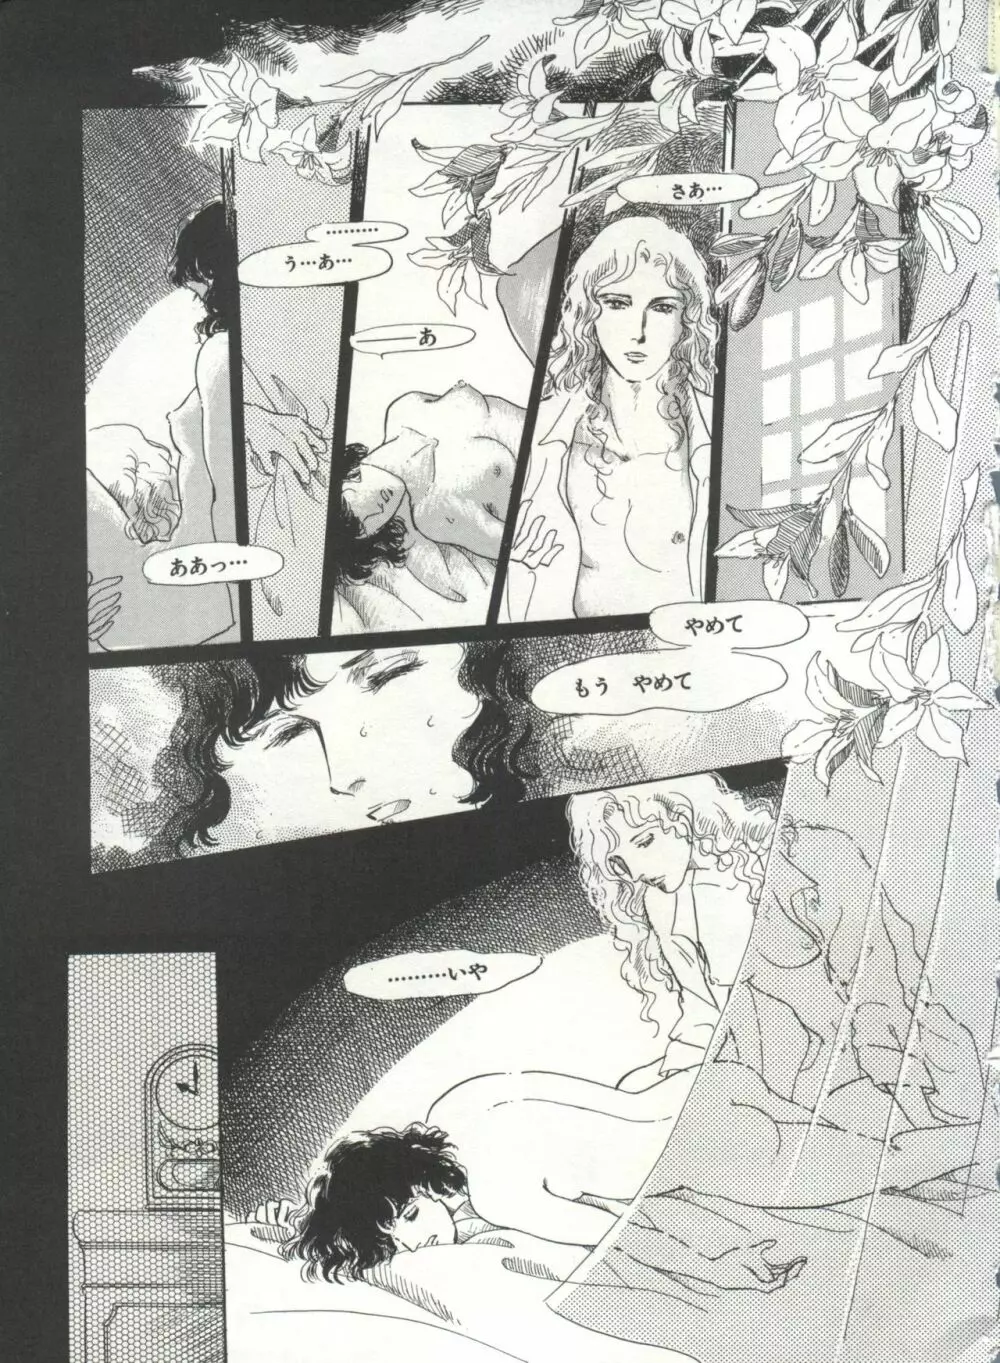 [Anthology] 美少女症候群(2) Lolita syndrome (よろず) 162ページ